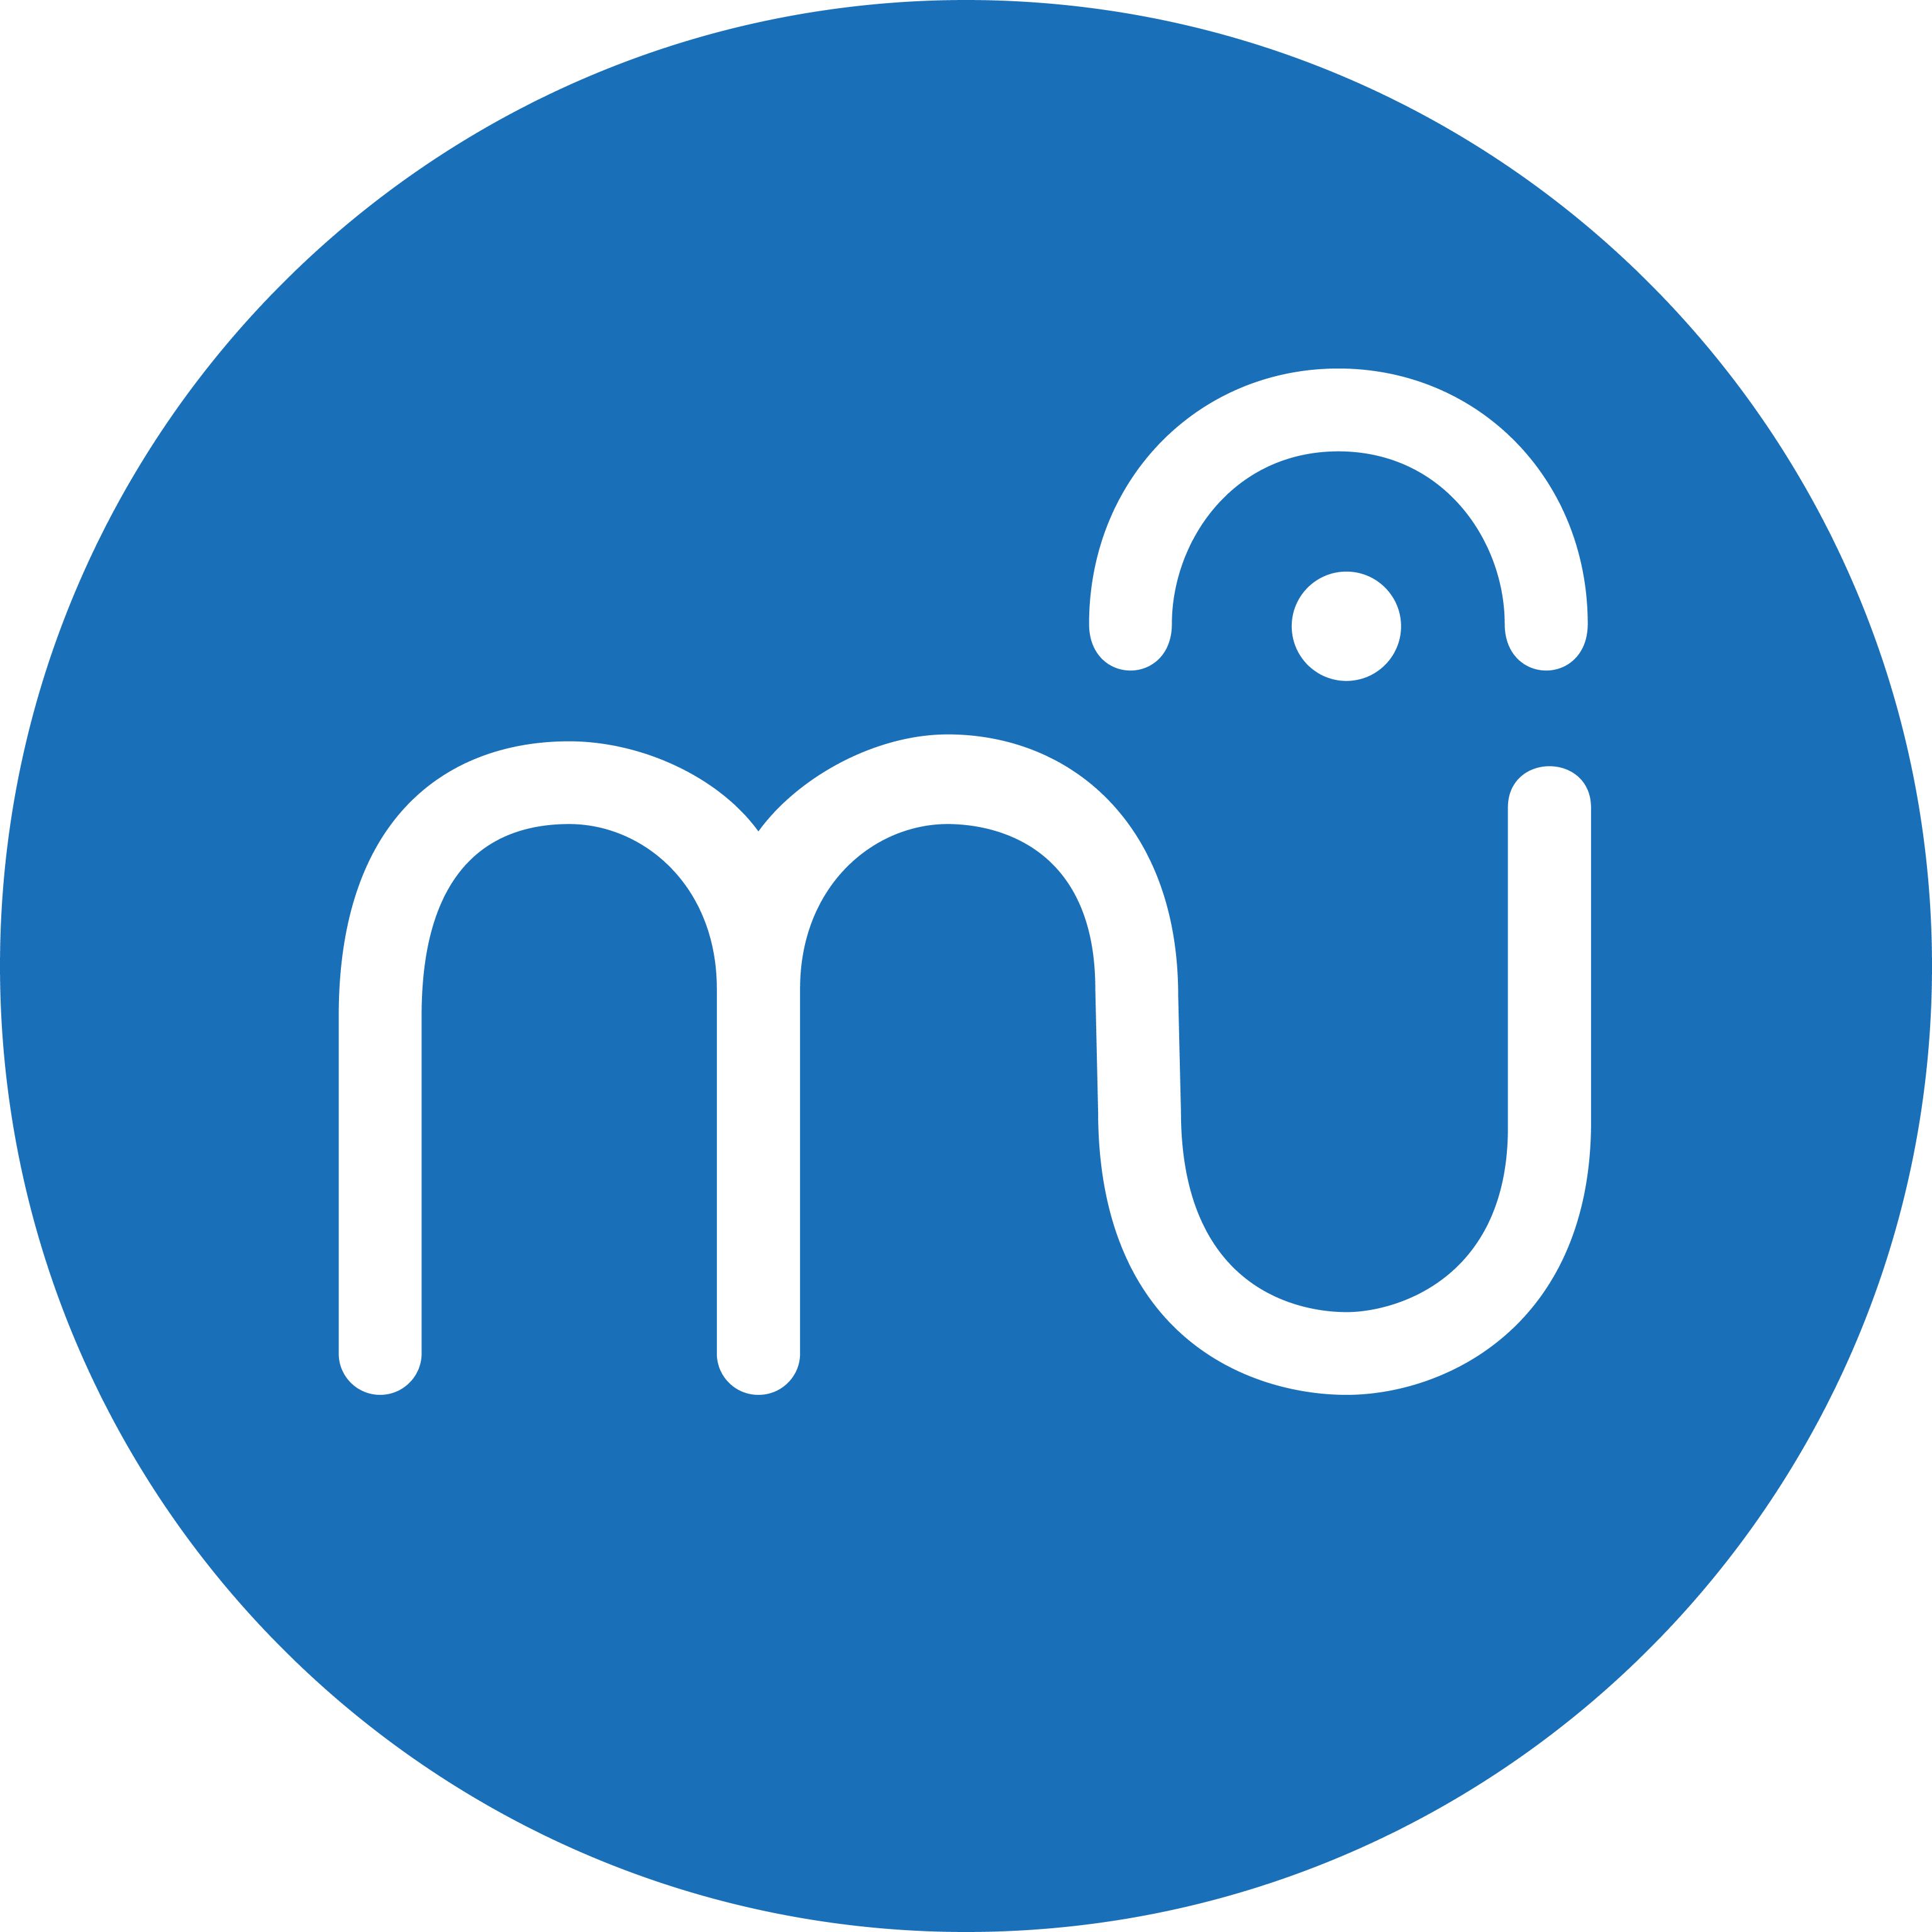 MU Logo - Logos and Graphics | MuseScore